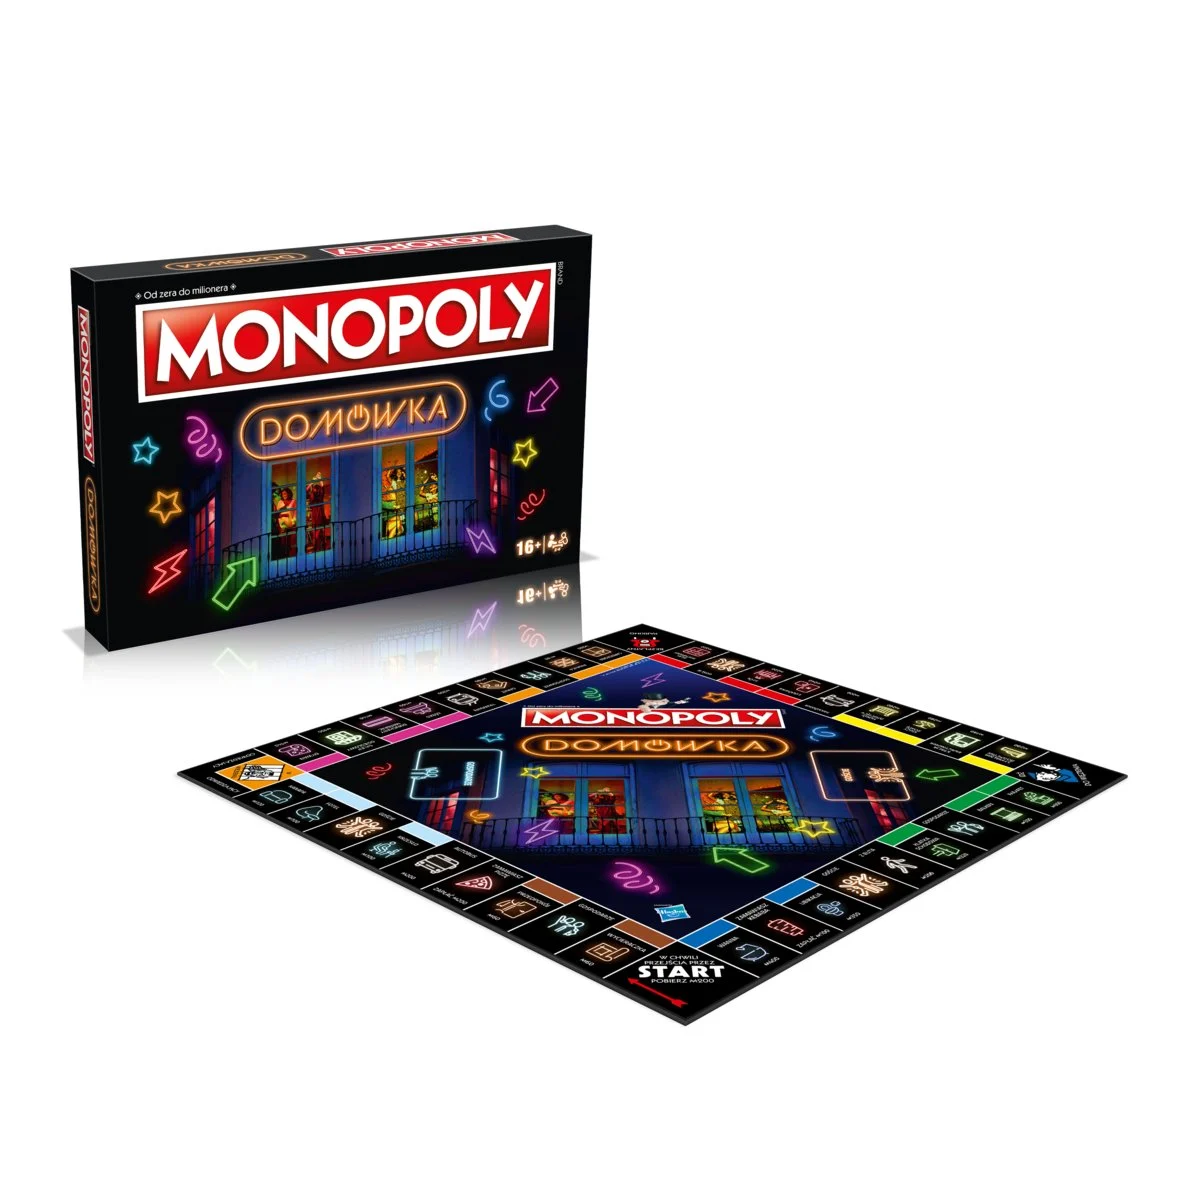 Gra towarzyska WINNING GAMES Monopoly Domówka